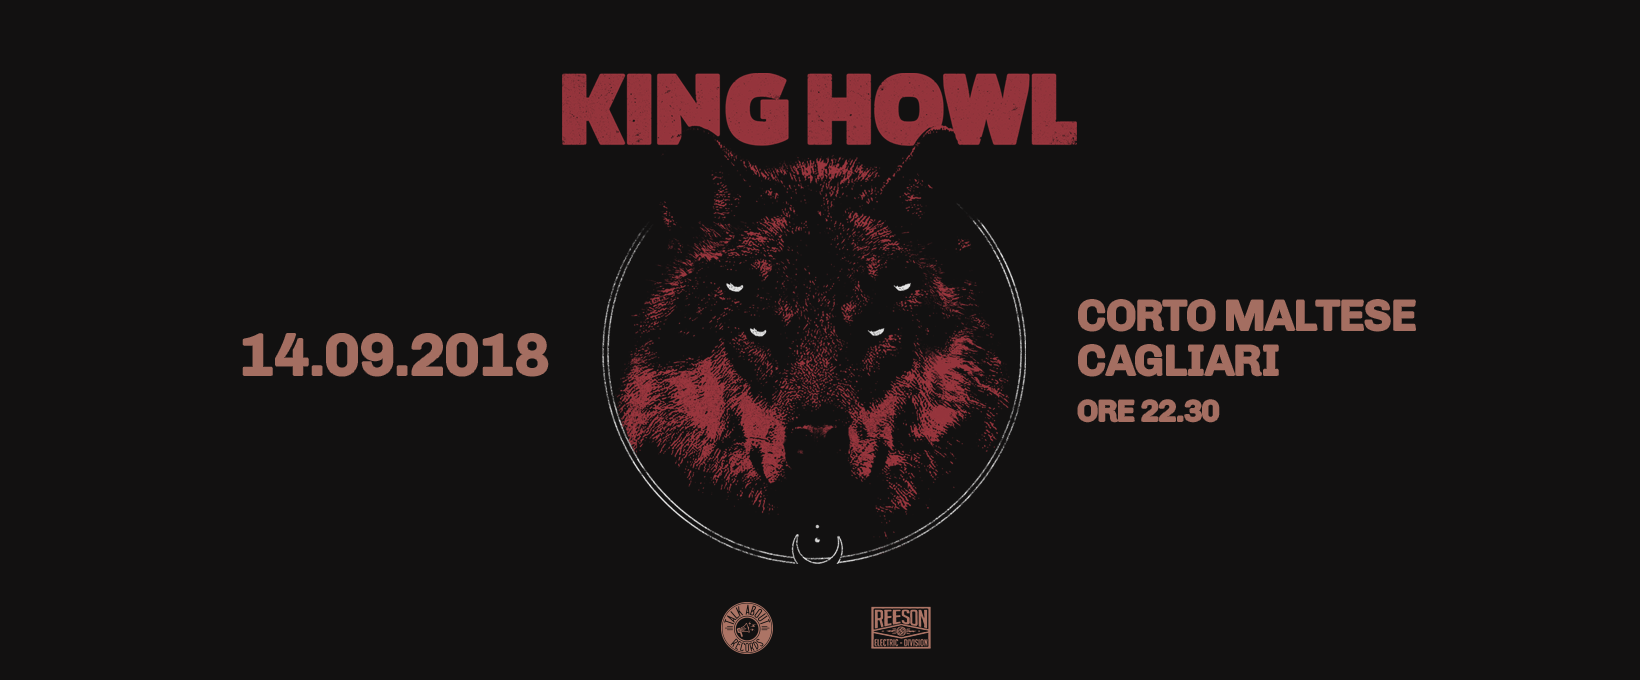 King-Howl-Tour-2018-Header-copy.png